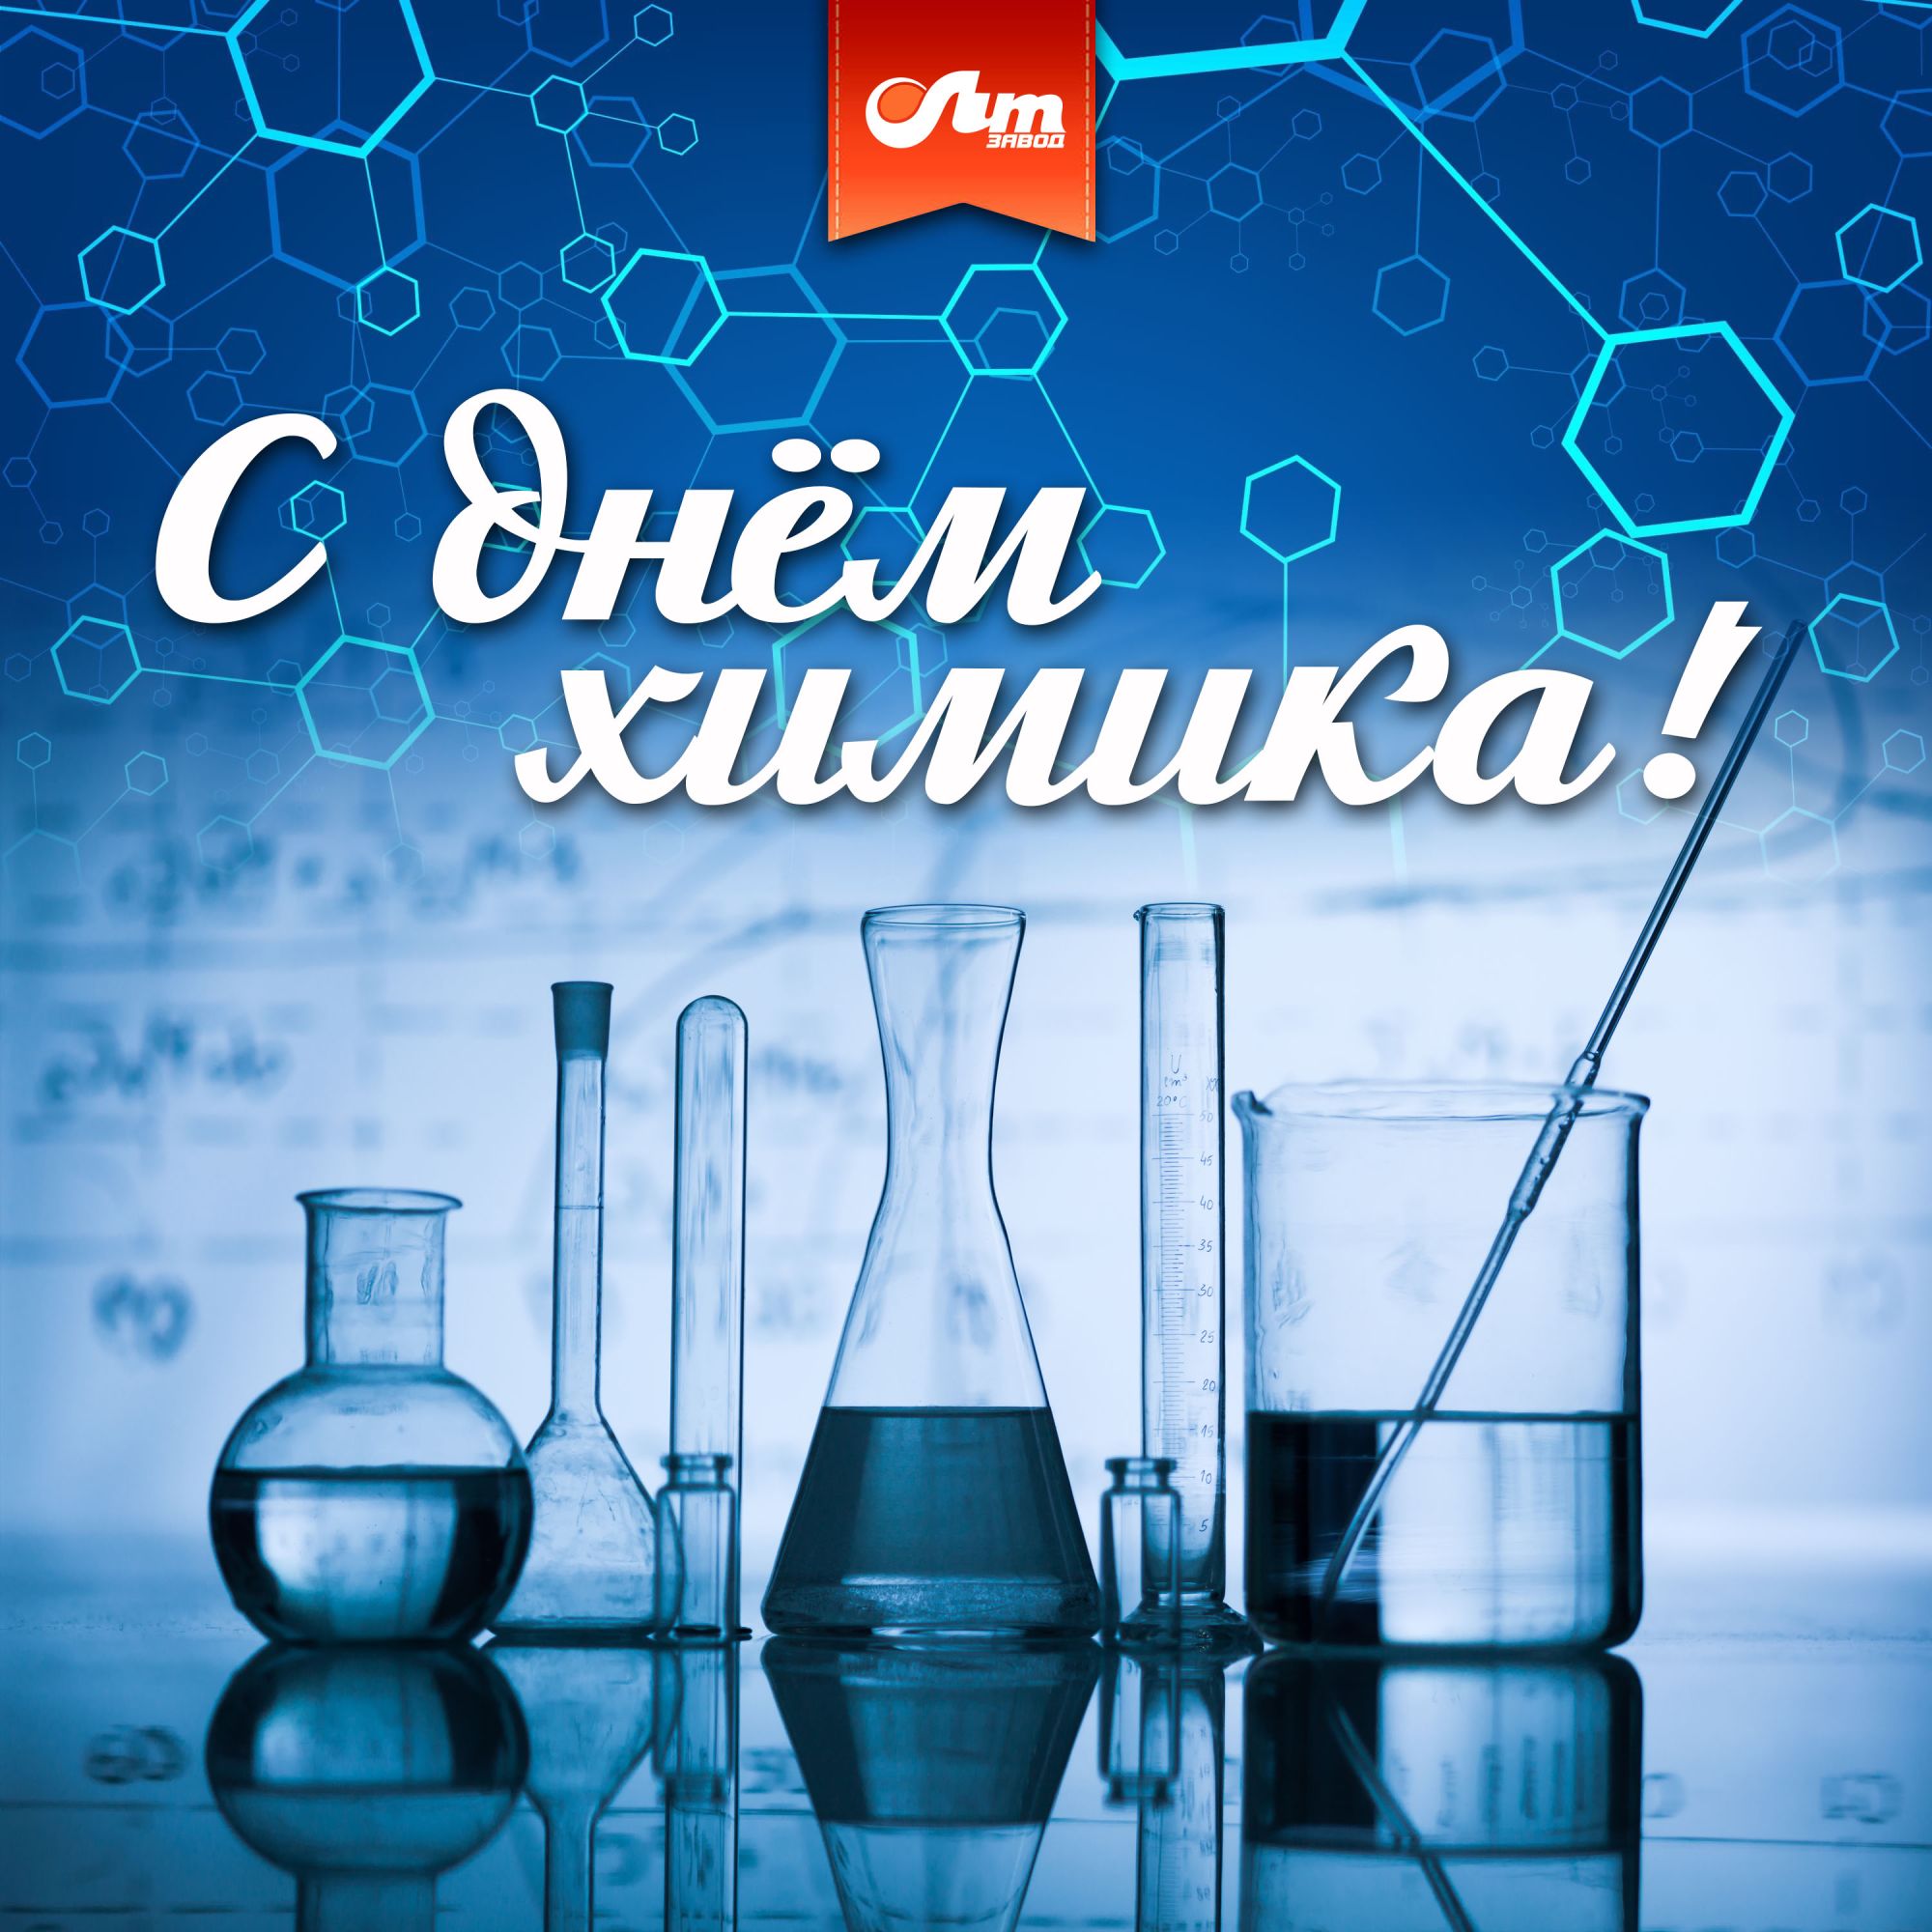 Поздравление с Днем химика